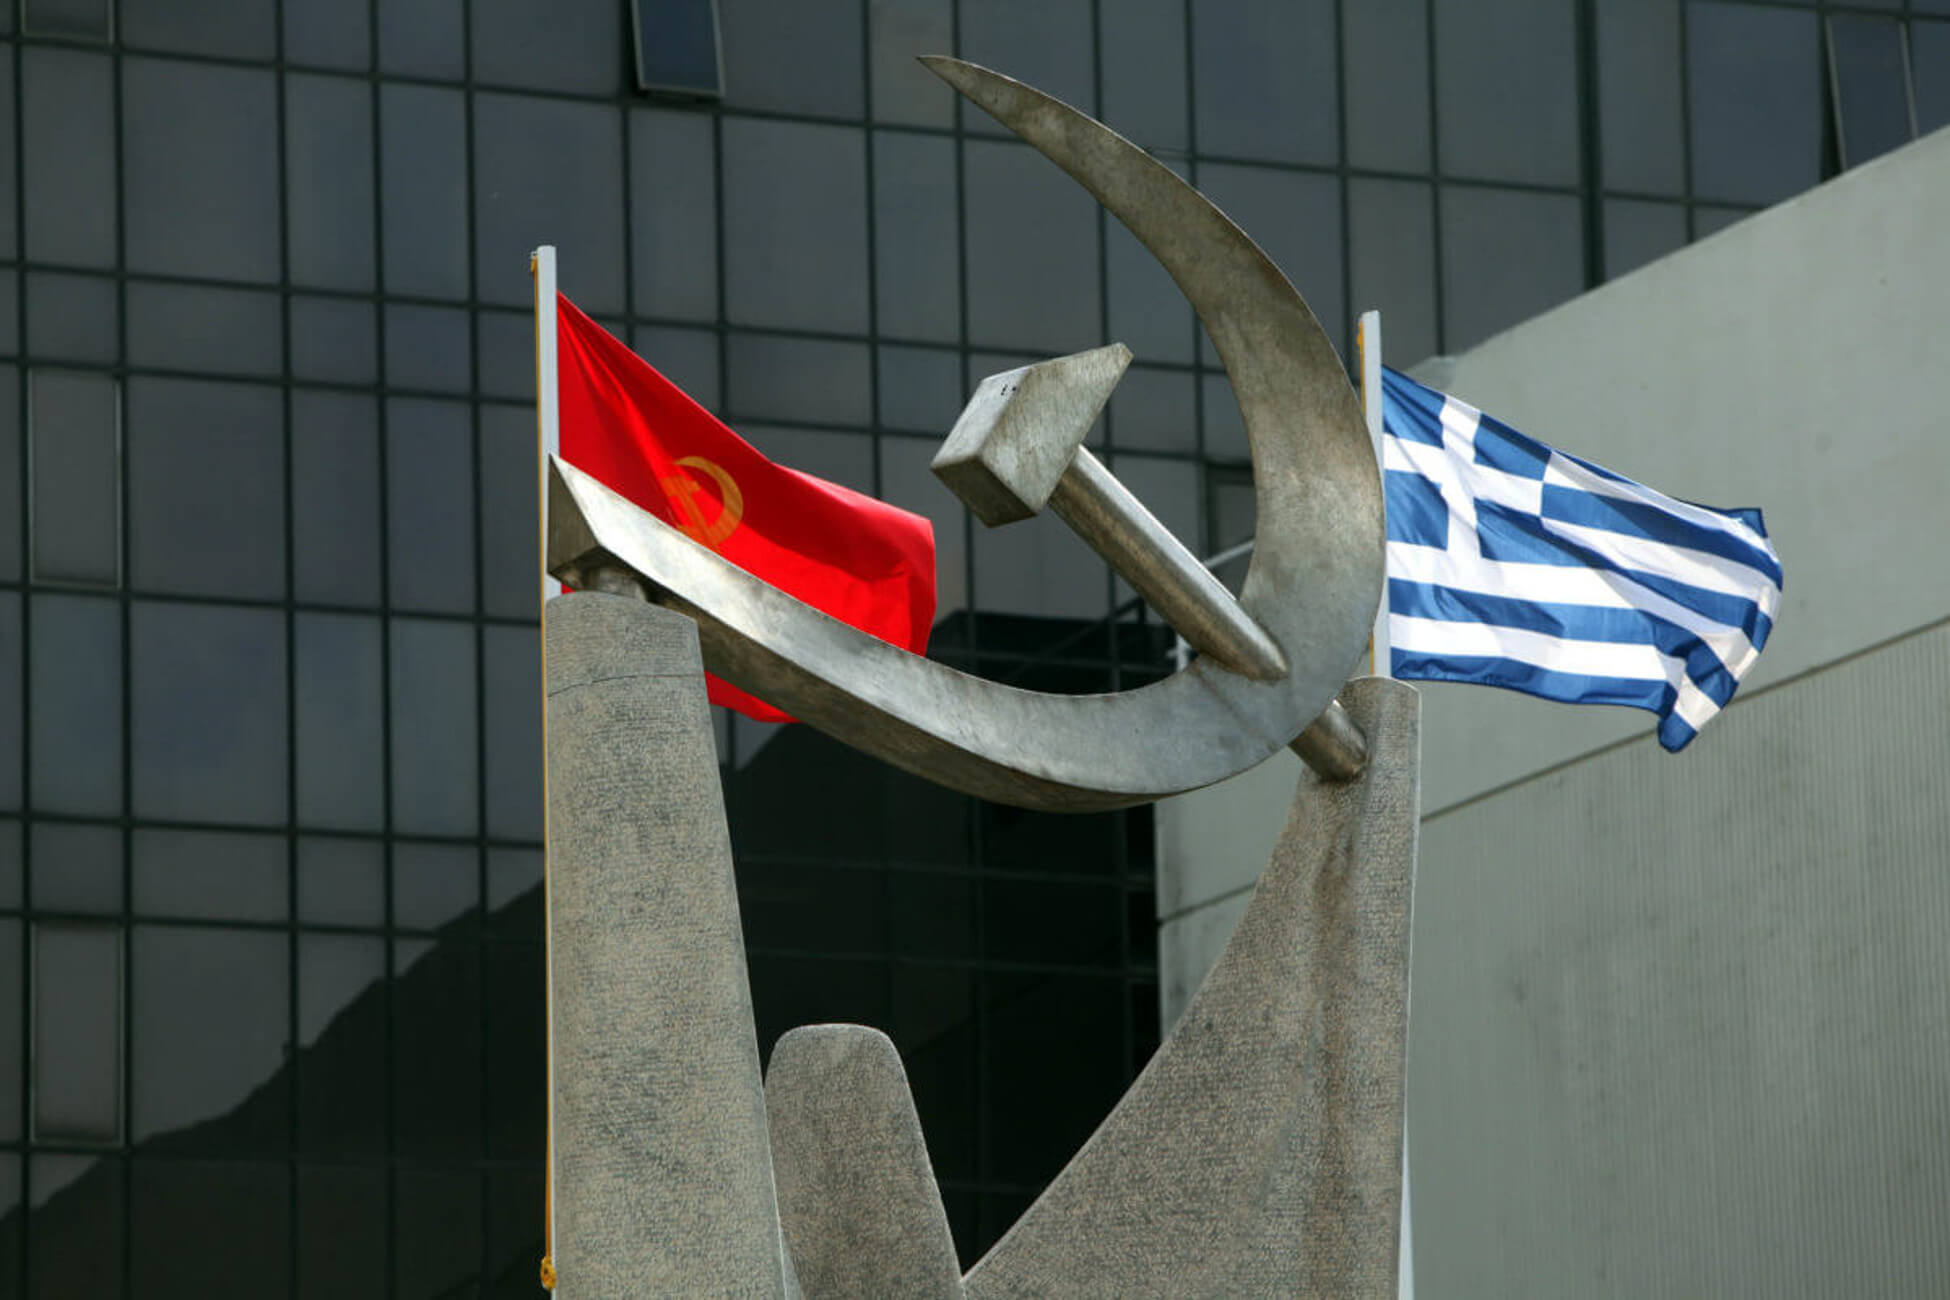 ΚΚΕ: Ο ΣΥΡΙΖΑ φτιάχνει το “προοδευτικό μέτωπο” με… την ένωση εφοπλιστών